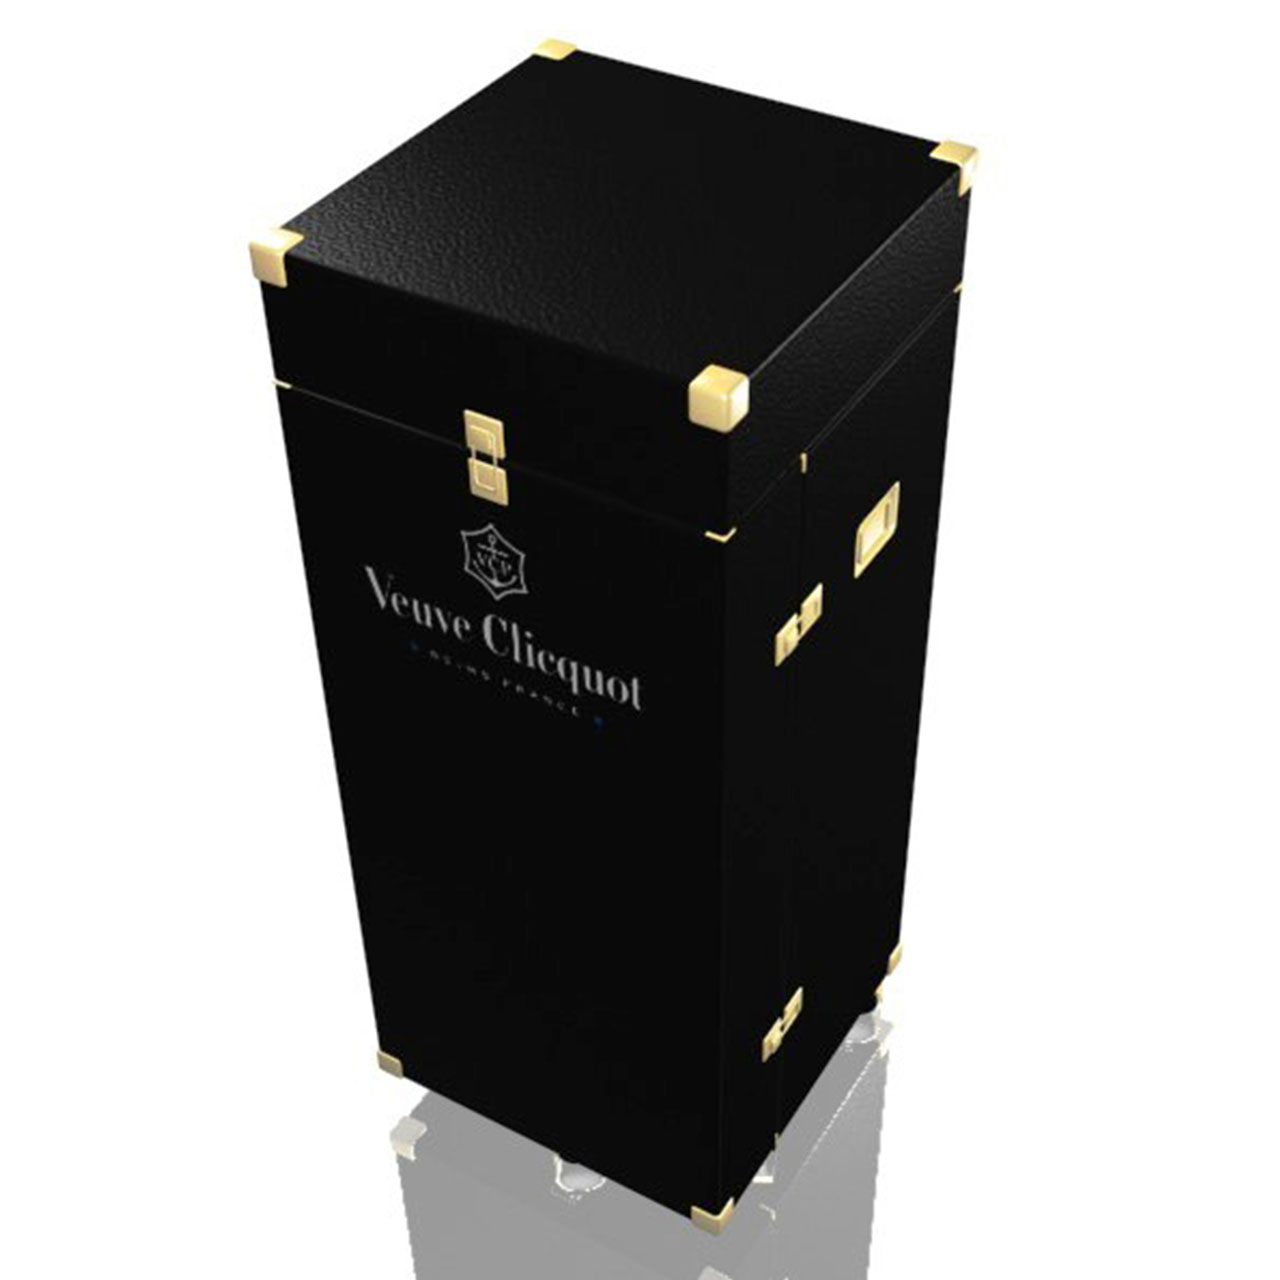 Coffre design service champagne Veuve Clicquot